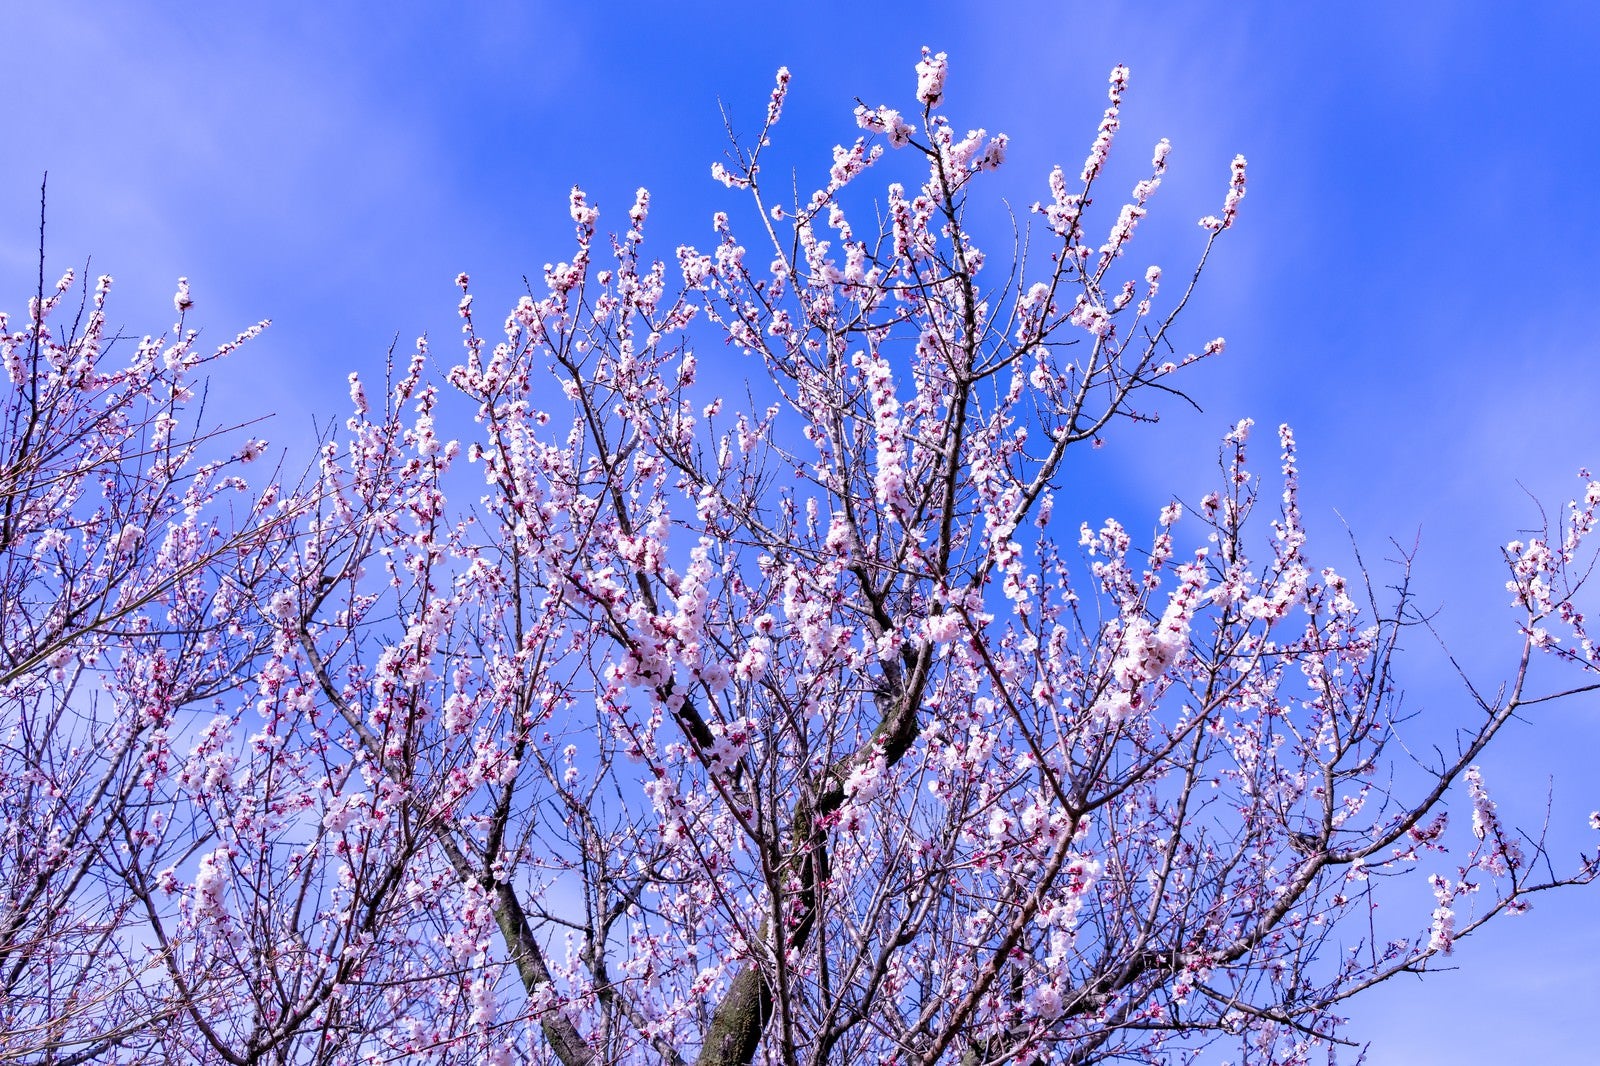 「青空に伸びる梅の花」の写真